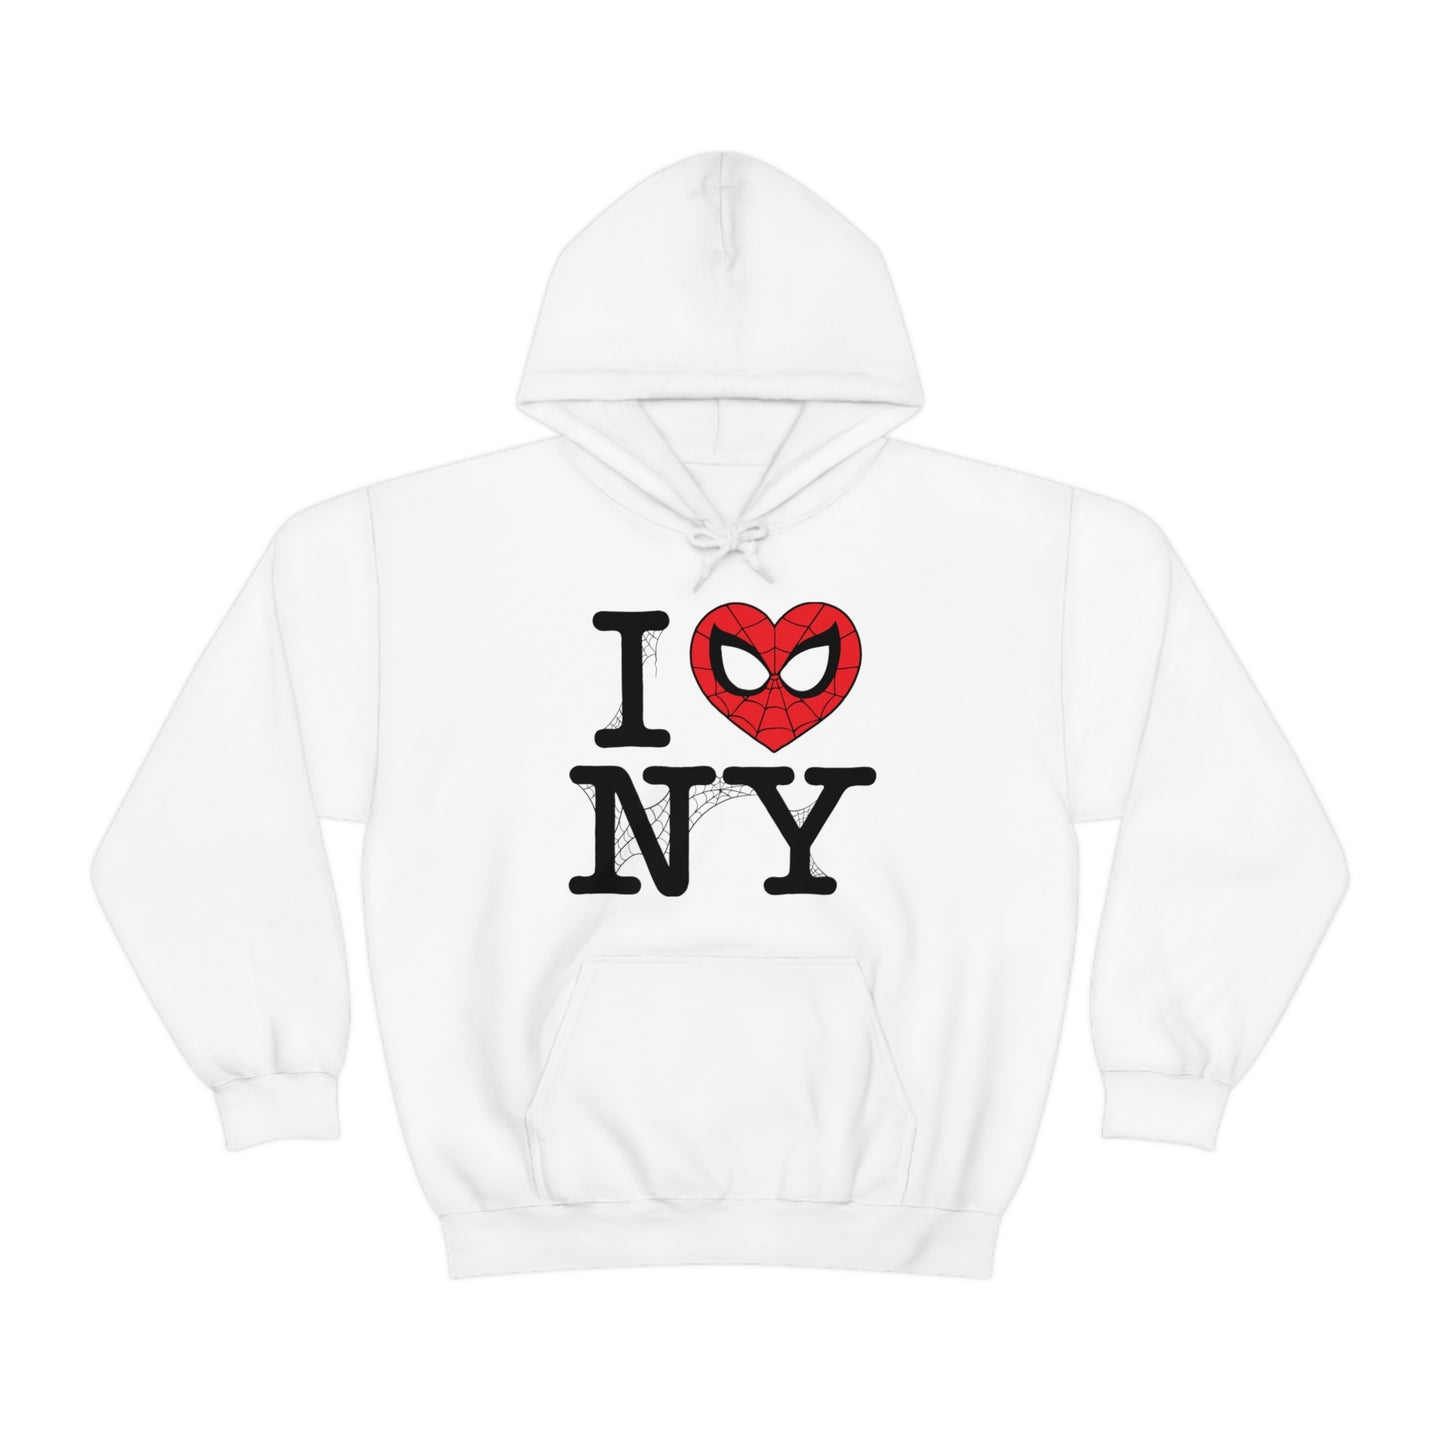 I Spidey NY hooded sweatshirt